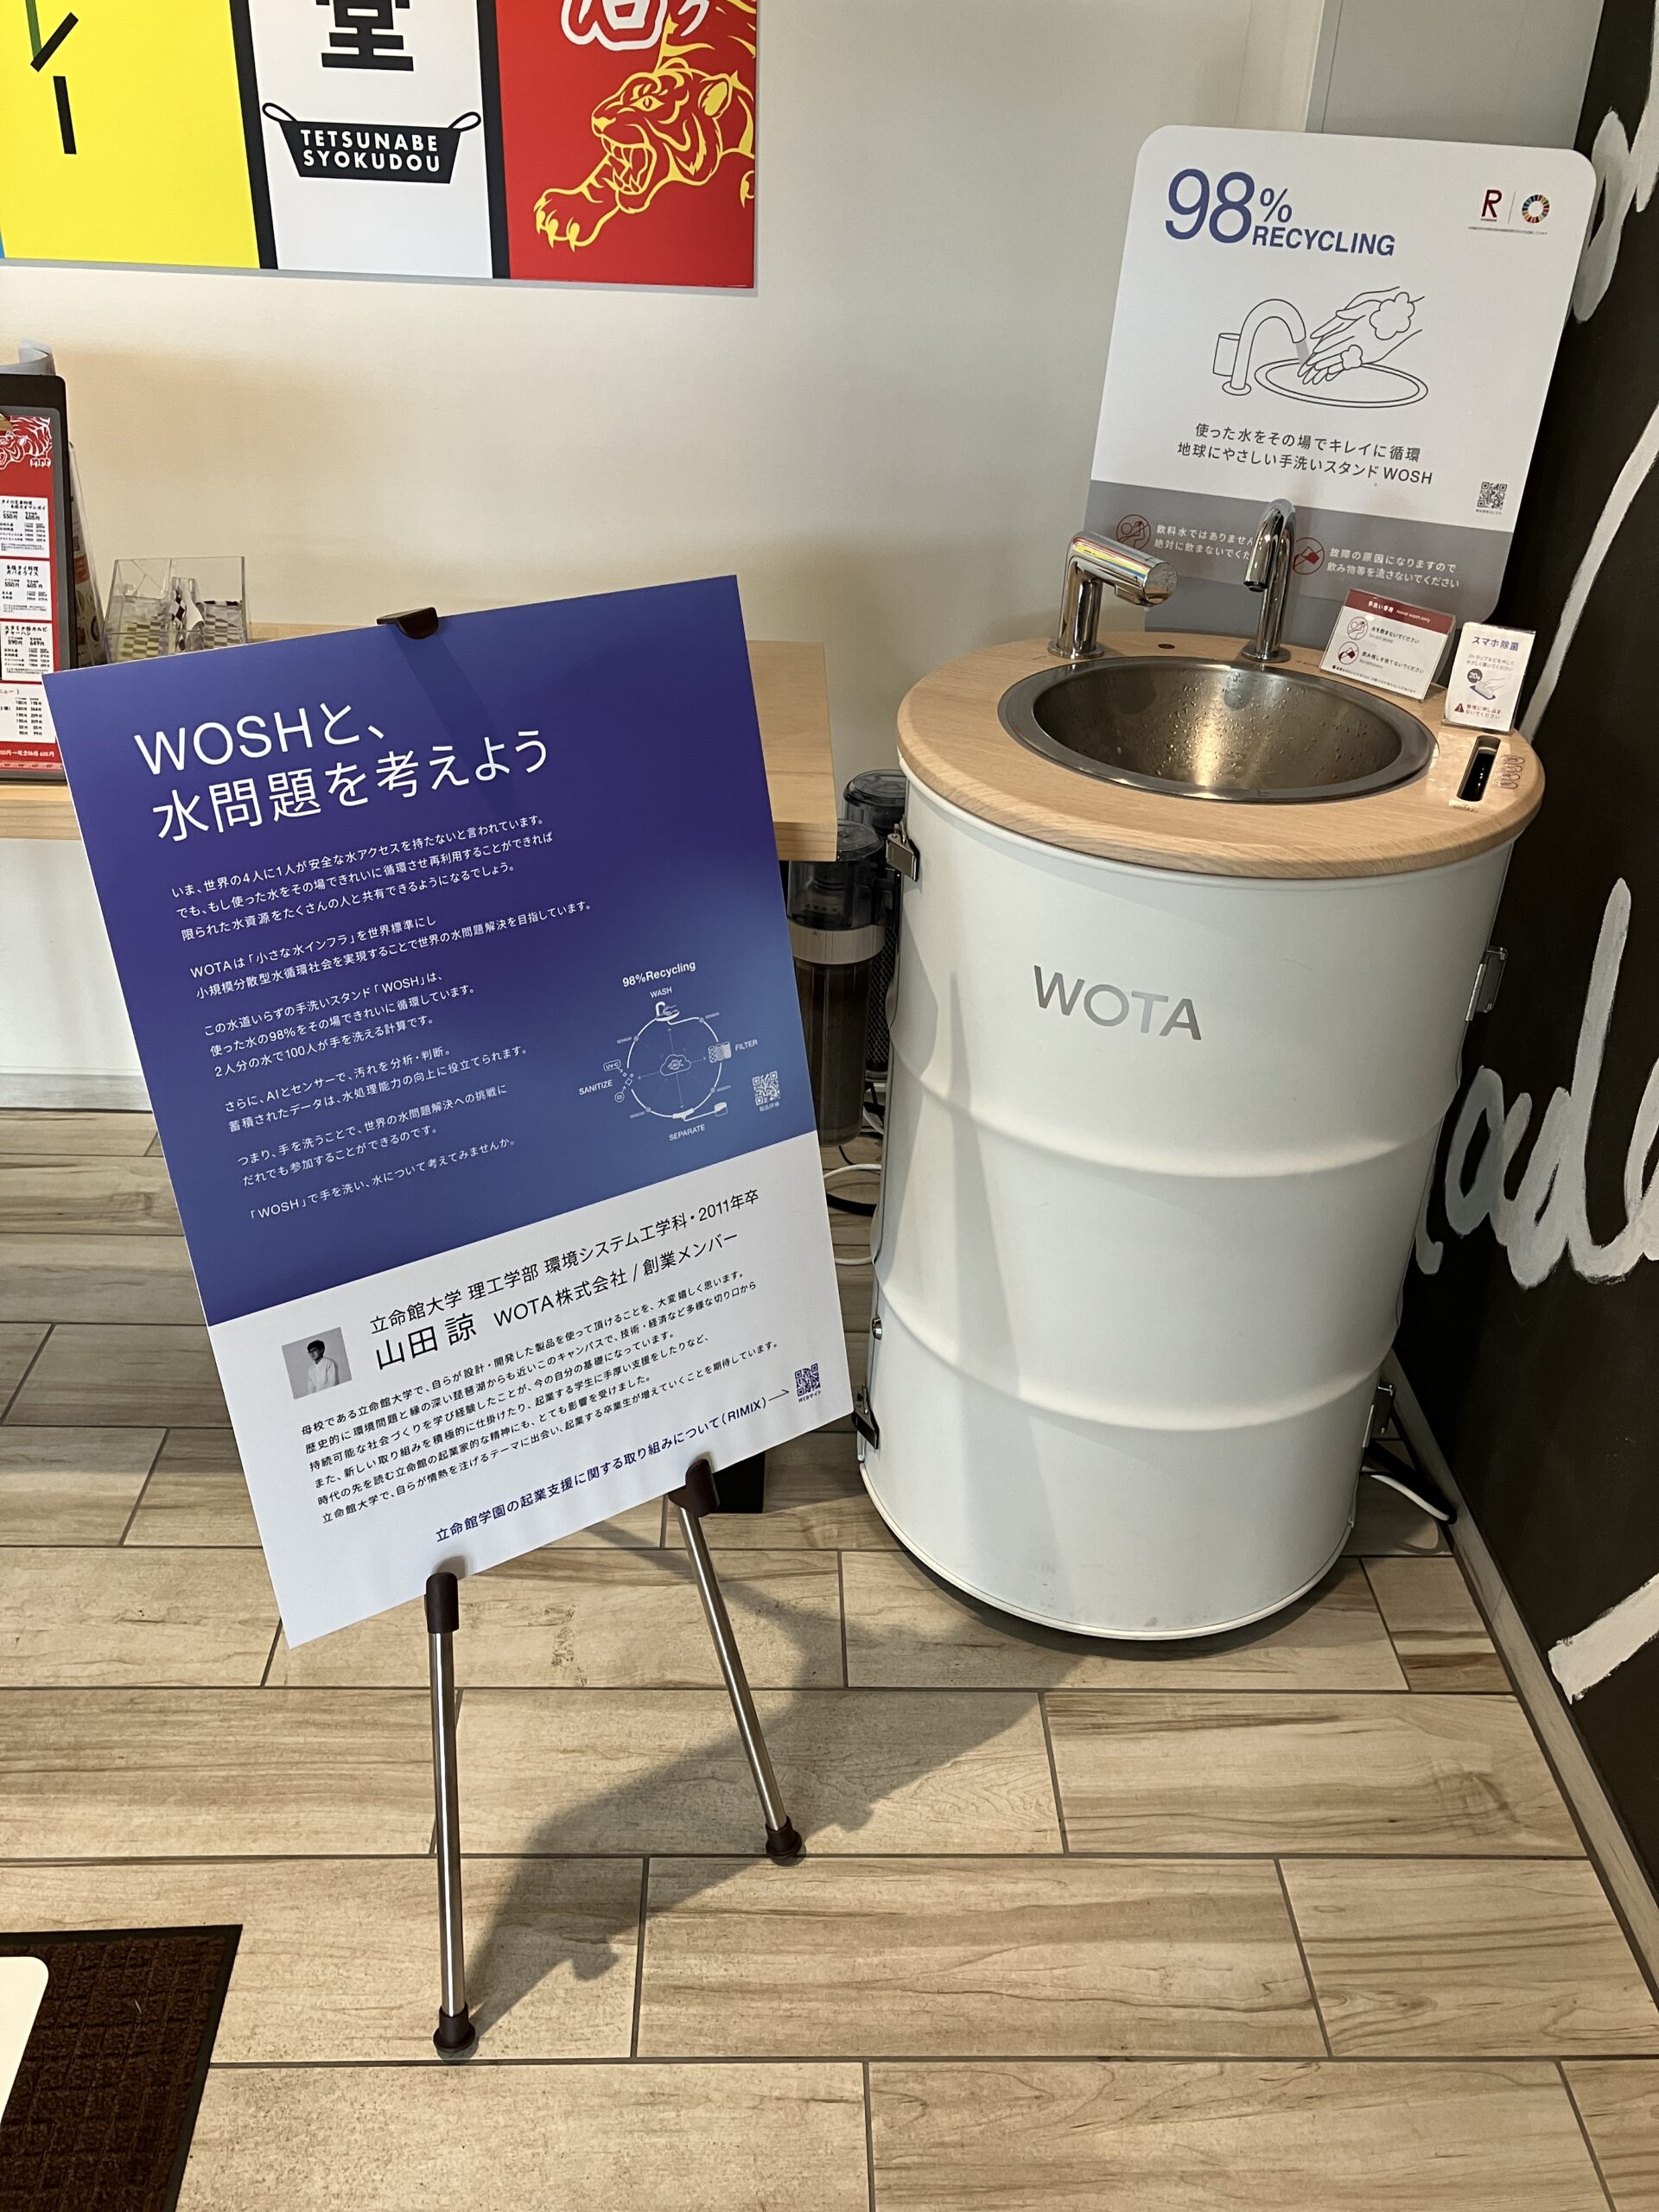 水道いらずの、水循環型手洗いスタンド「WOSH」展示